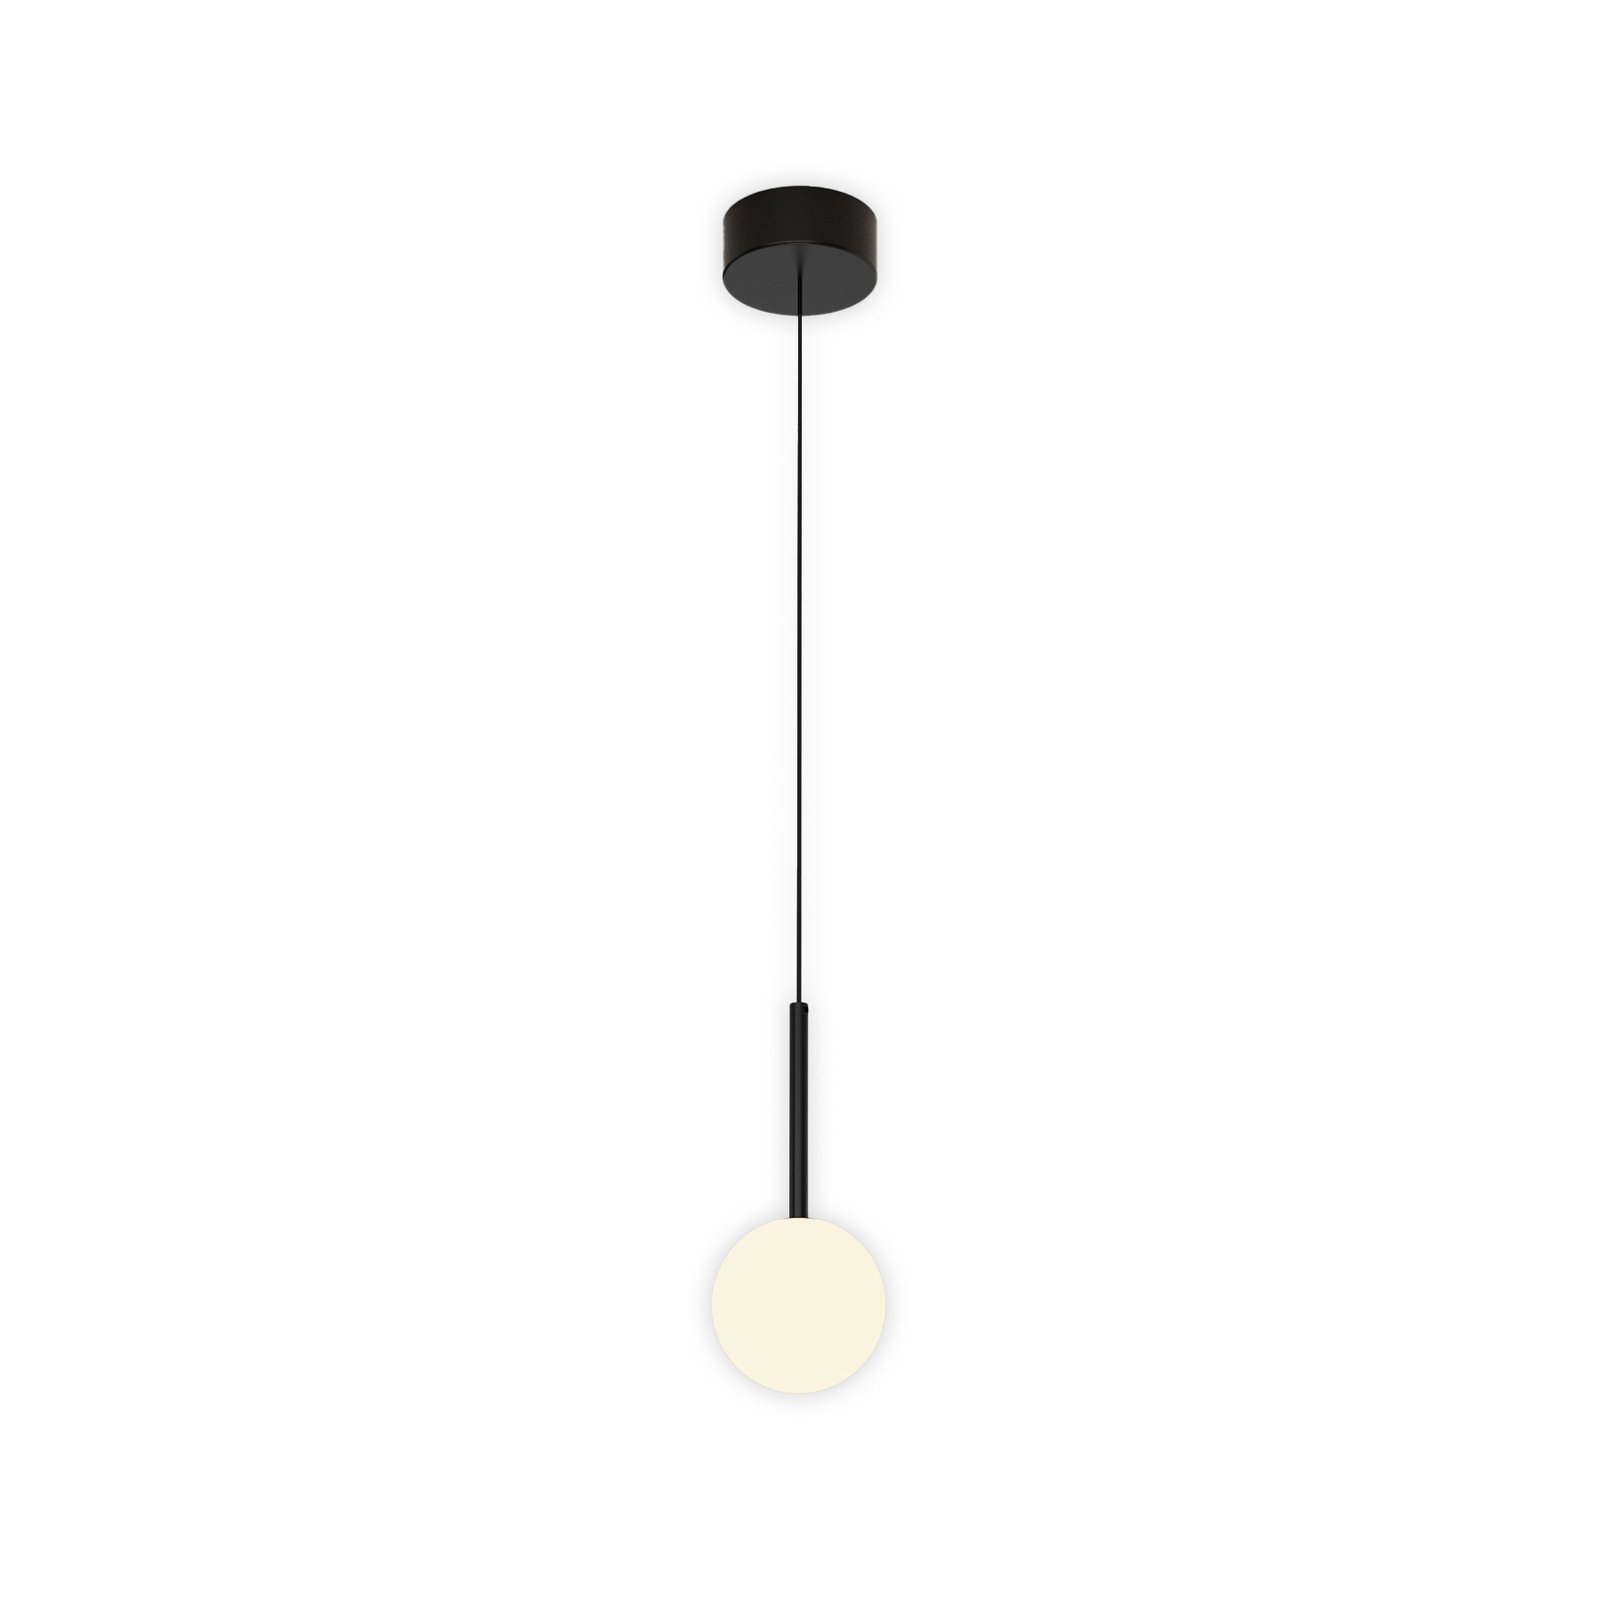 Podrumska viseća svjetiljka, 1 žarulja, željezo, crna, staklo, bijela